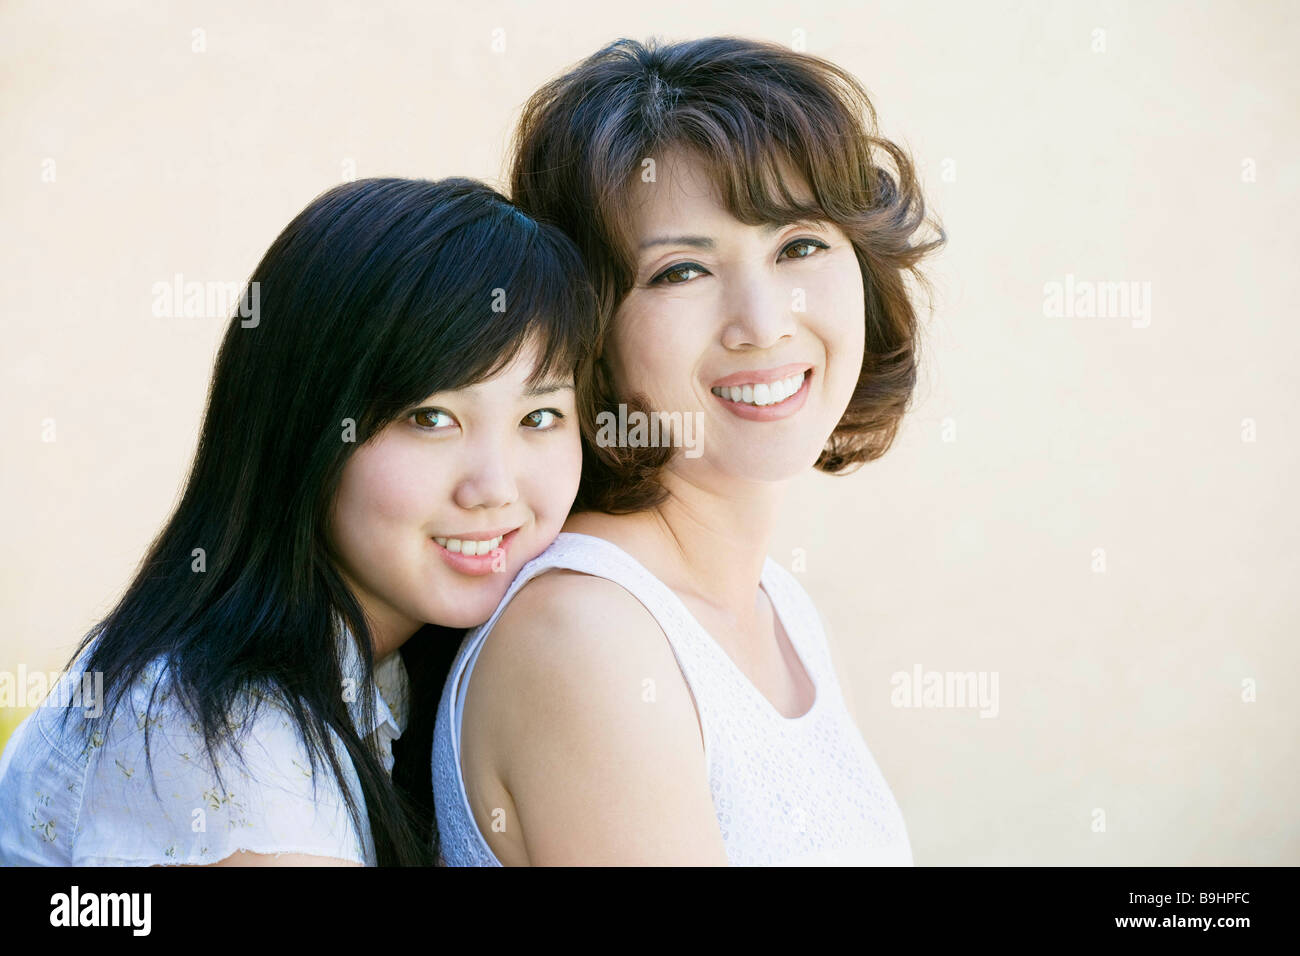 Японская мать и дочка. Японки мать и дочь красотки. Сразу две улыбки маме. Дочка и мать улыбаются лоб в лоб. Её улыбка мама фото фон.